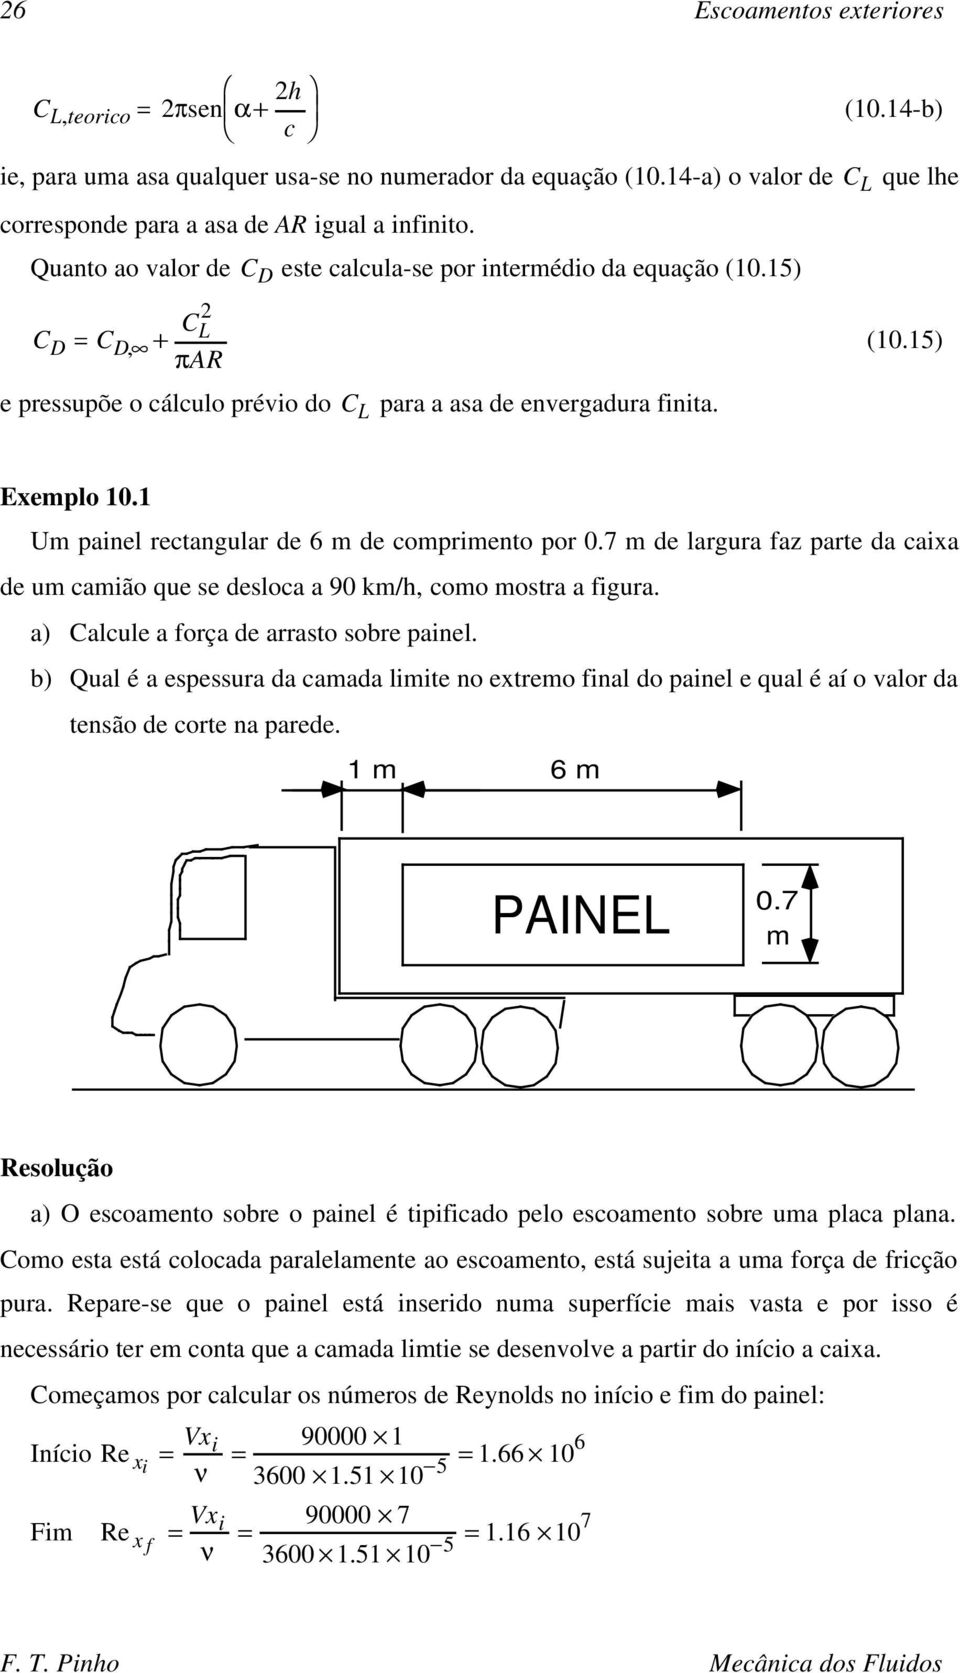 Um painel rectangular de 6 m de comprimento por 0.7 m de largura faz parte da caixa de um camião que se desloca a 90 km/h, como mostra a figura. a) Calcule a força de arrasto sobre painel.